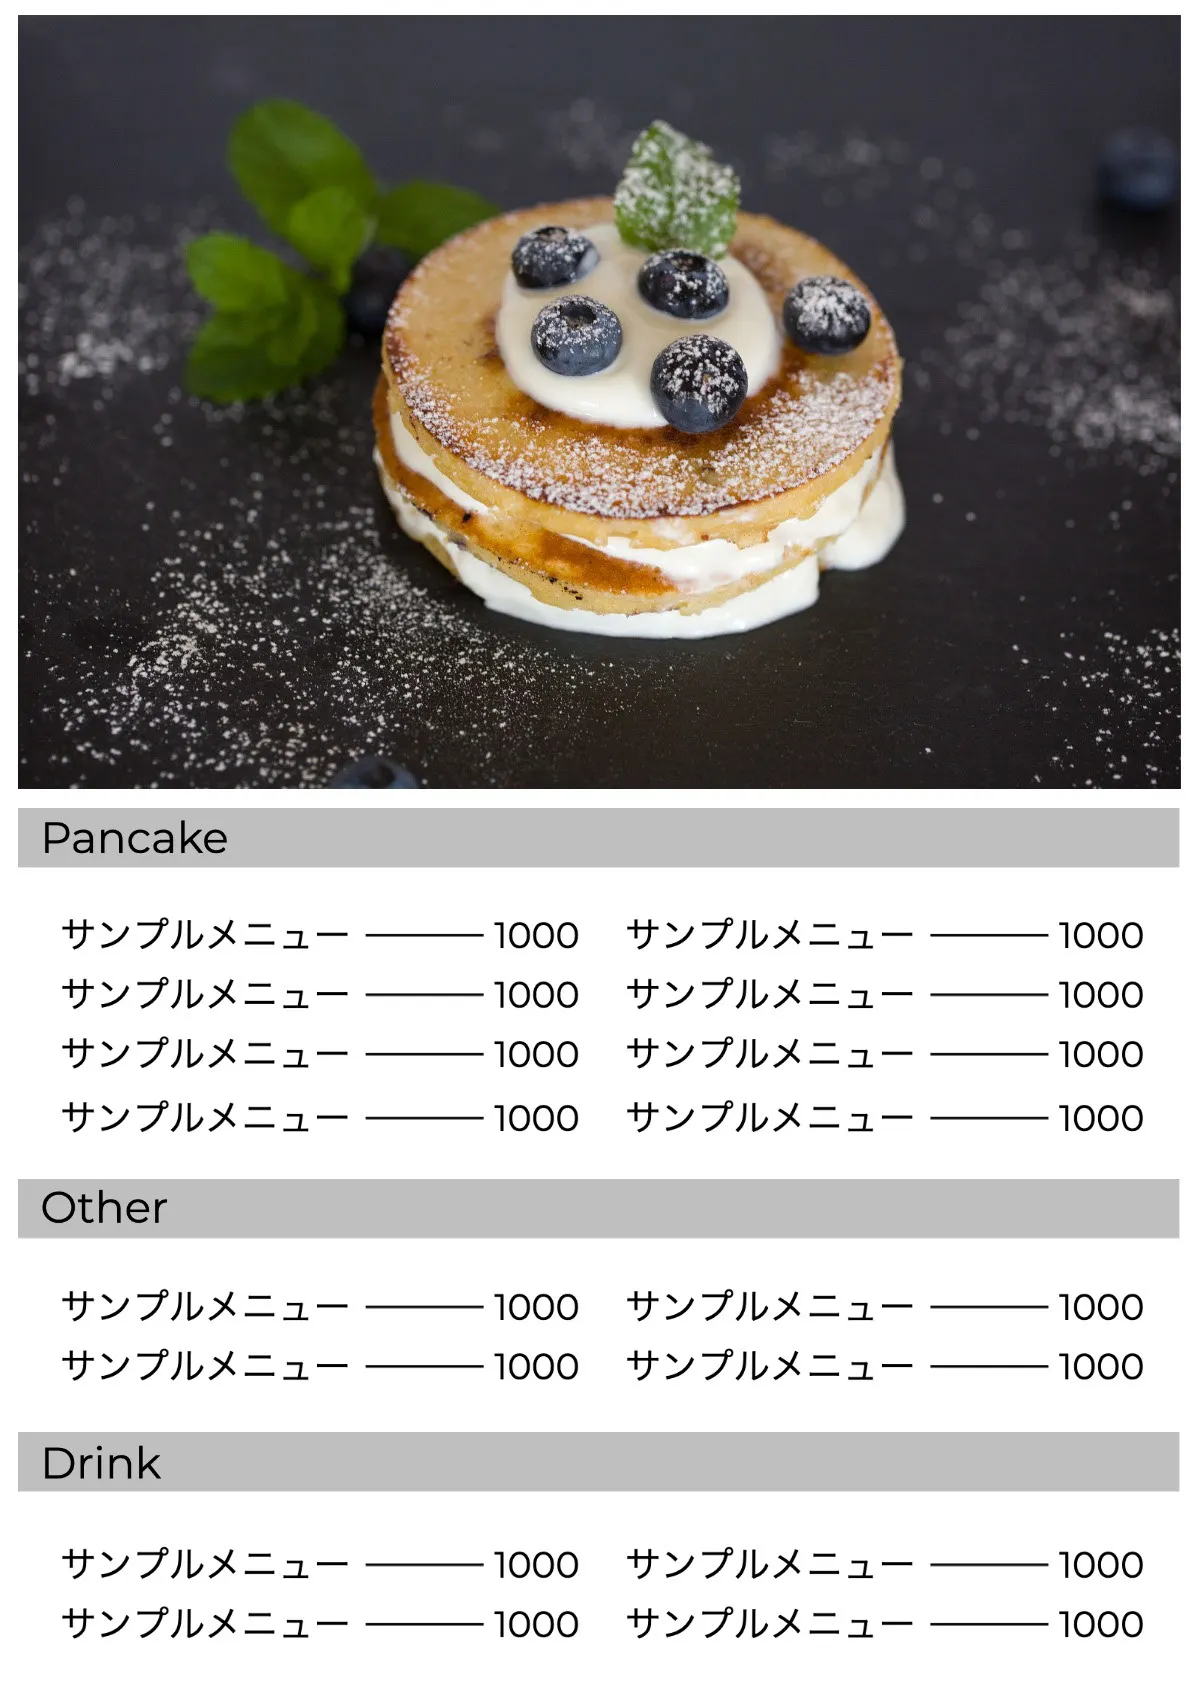 Pancake menu